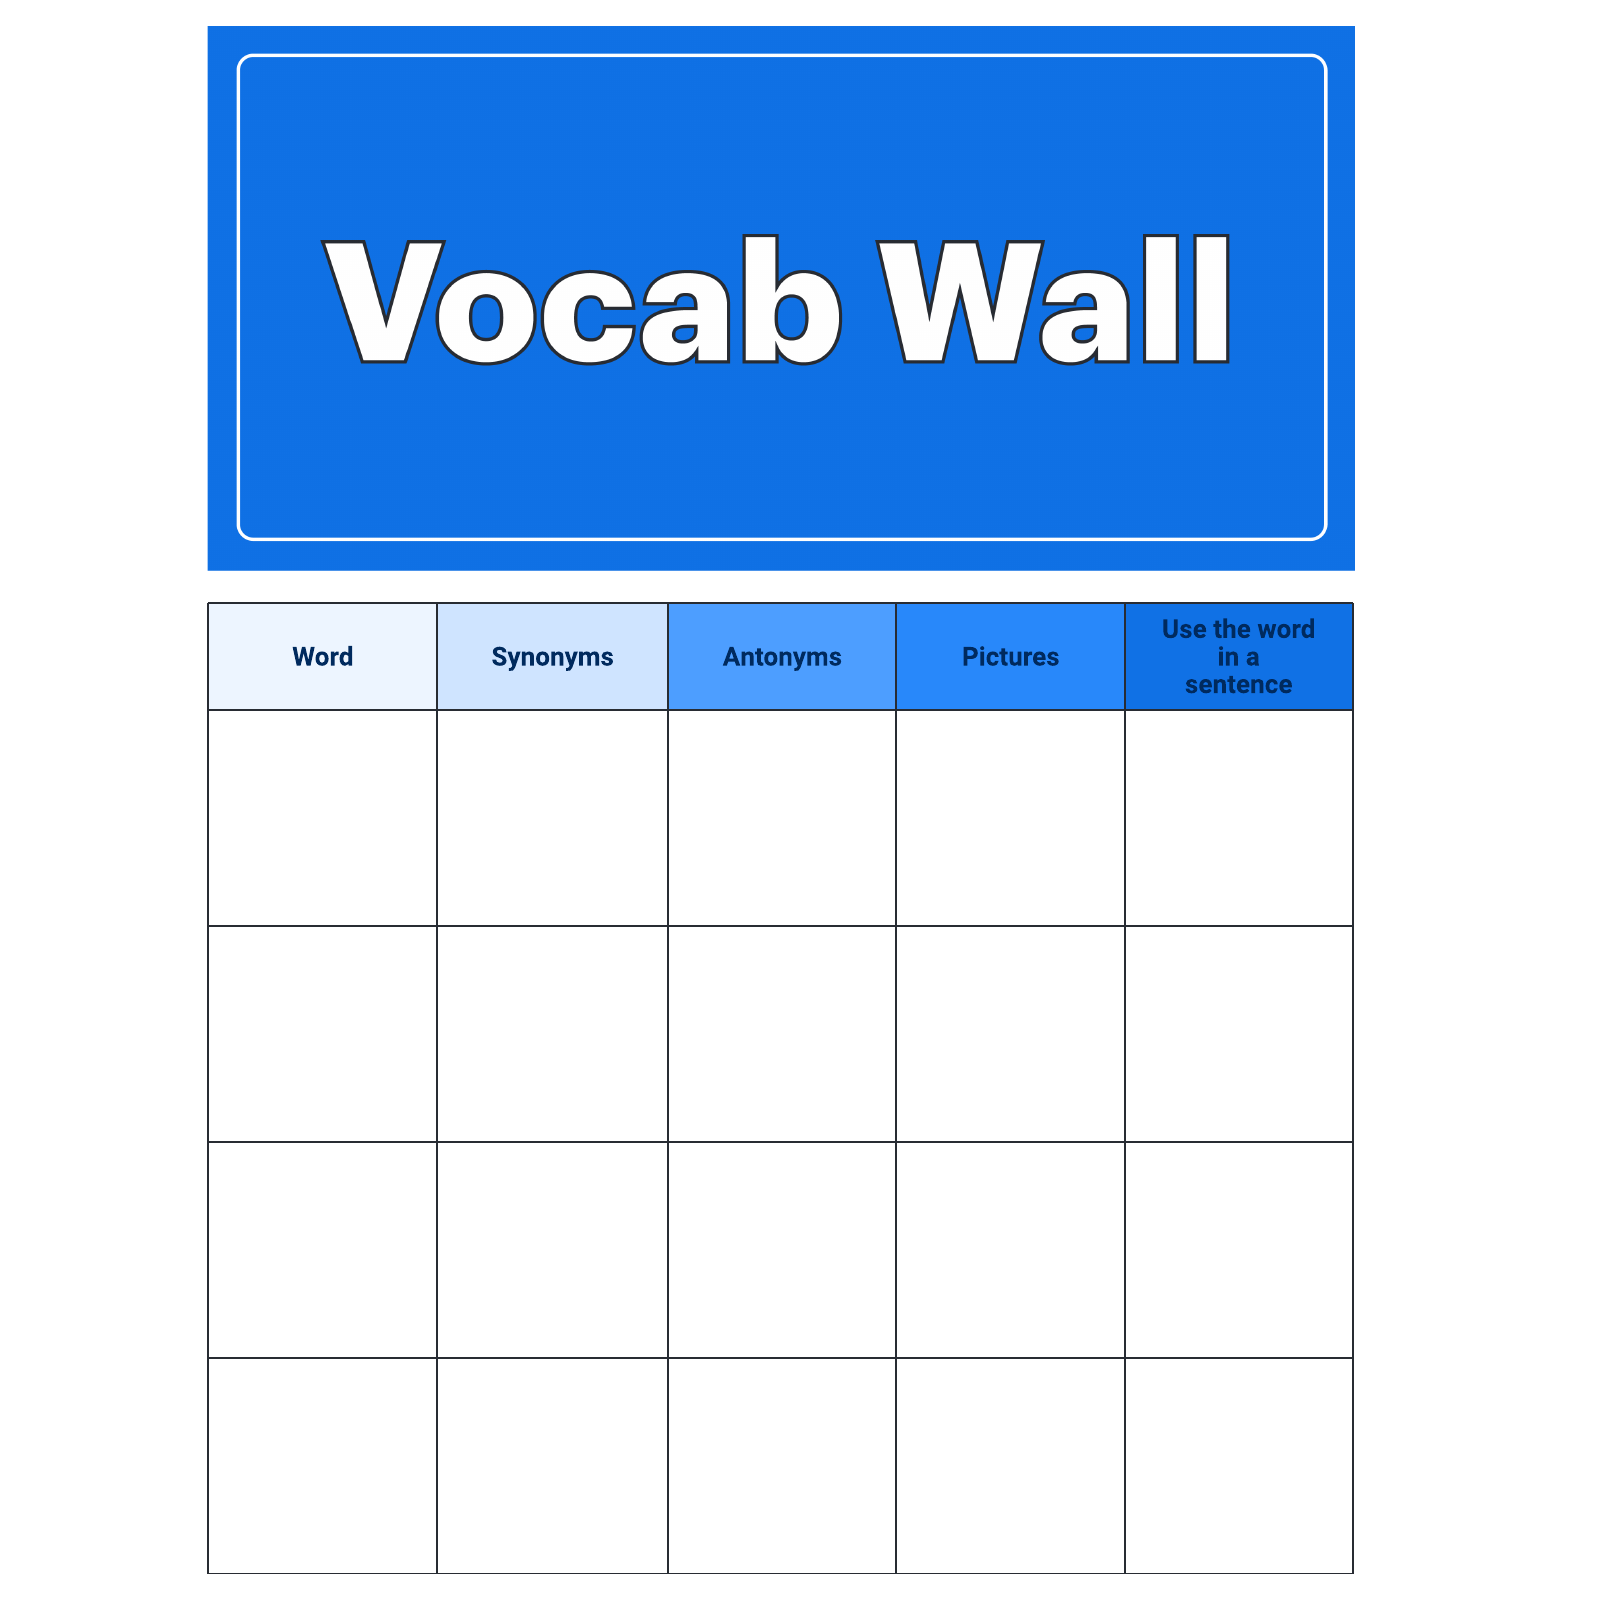 Vocabulary Wall example